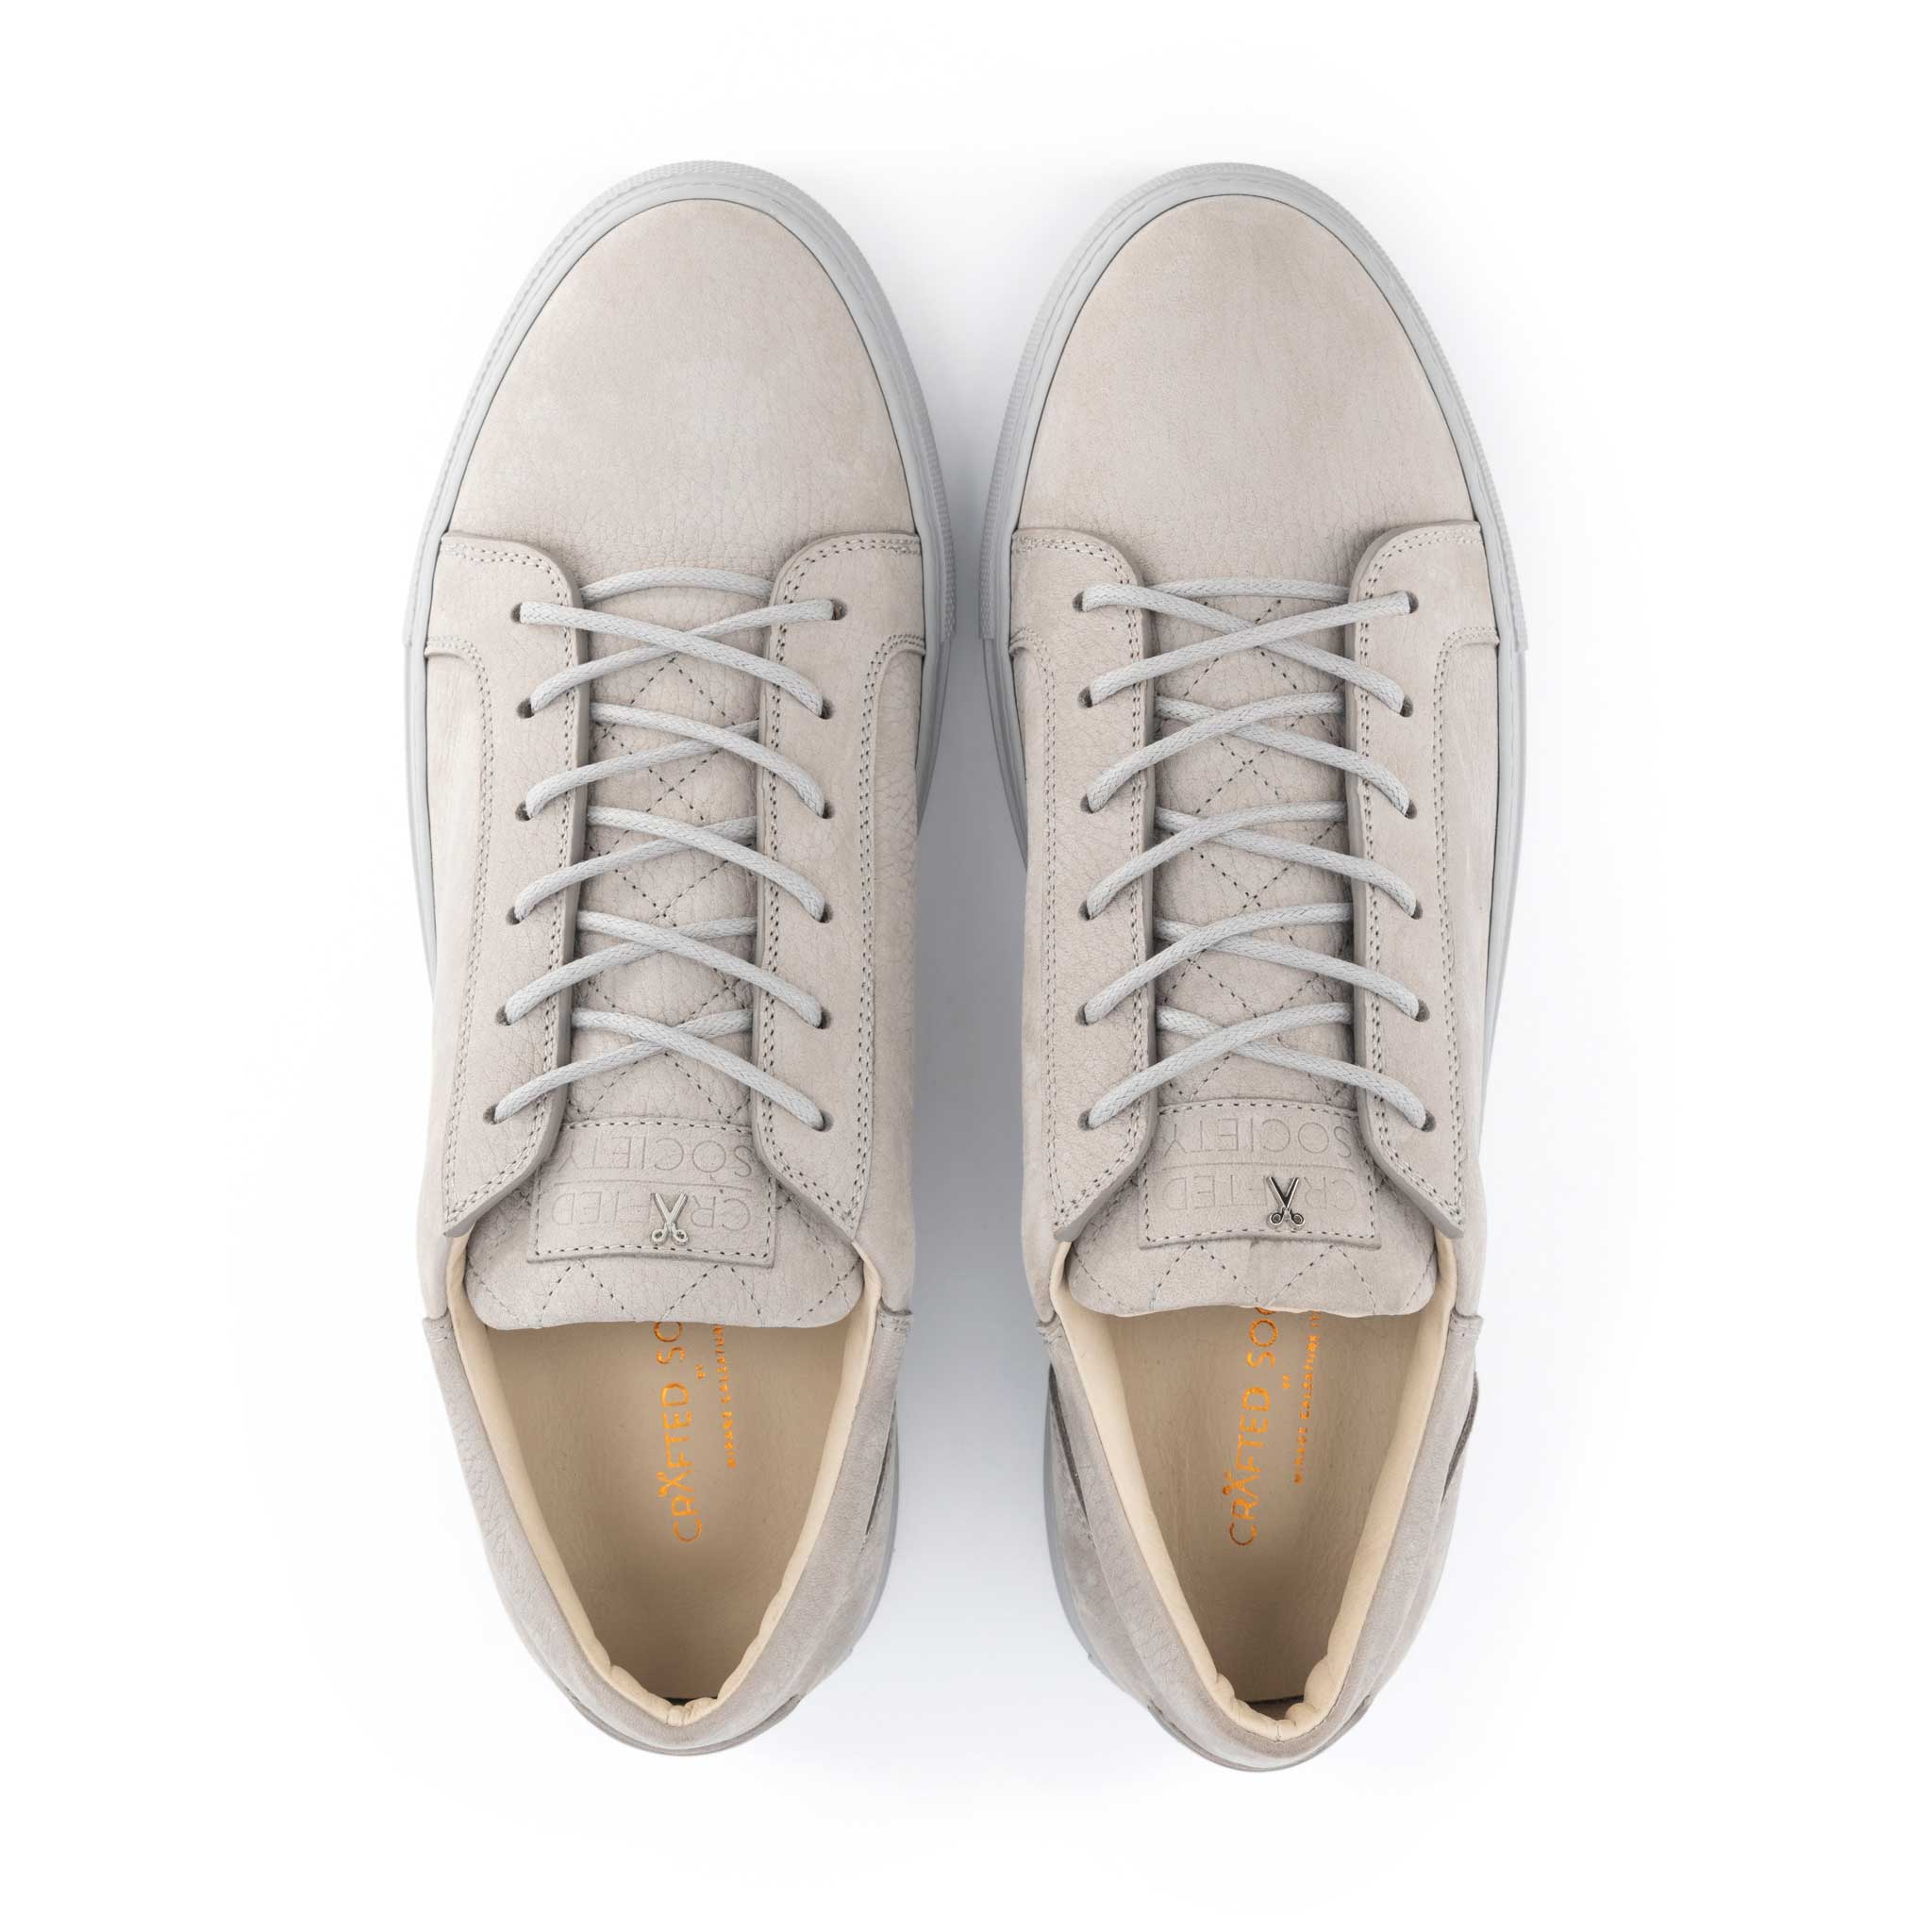 italian leather sneaker in pearl grey nubuck calf leather